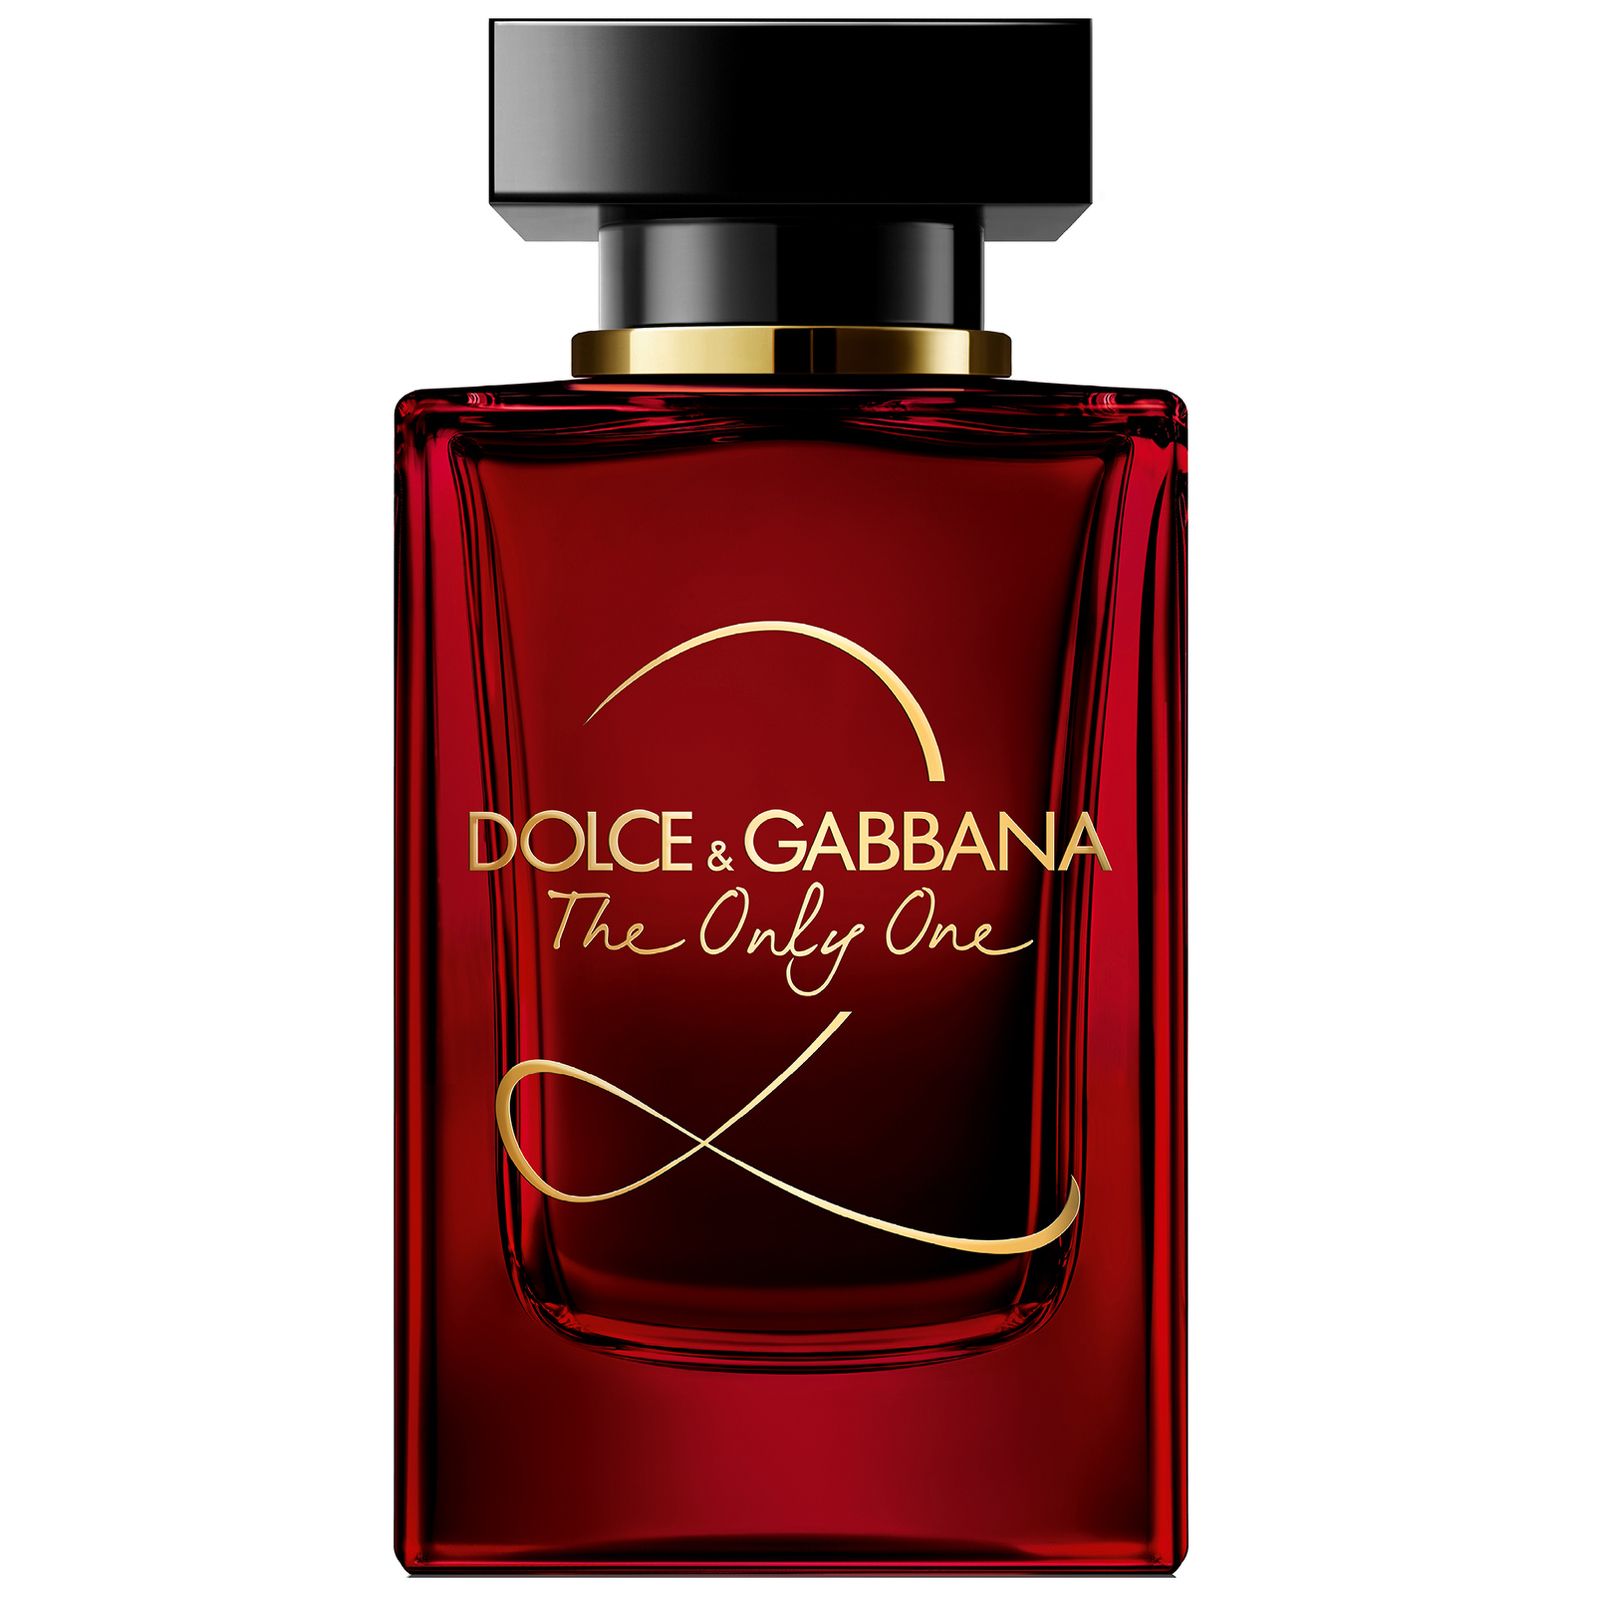 Туалетная вода дольче габбана летуаль. Dolce Gabbana the only one 2 100 мл. Dolce& Gabbana the only one 2 EDP, 100 ml. Dolce Gabbana the only one 2 30 мл. Dolce & Gabbana the only one, EDP., 100 ml.